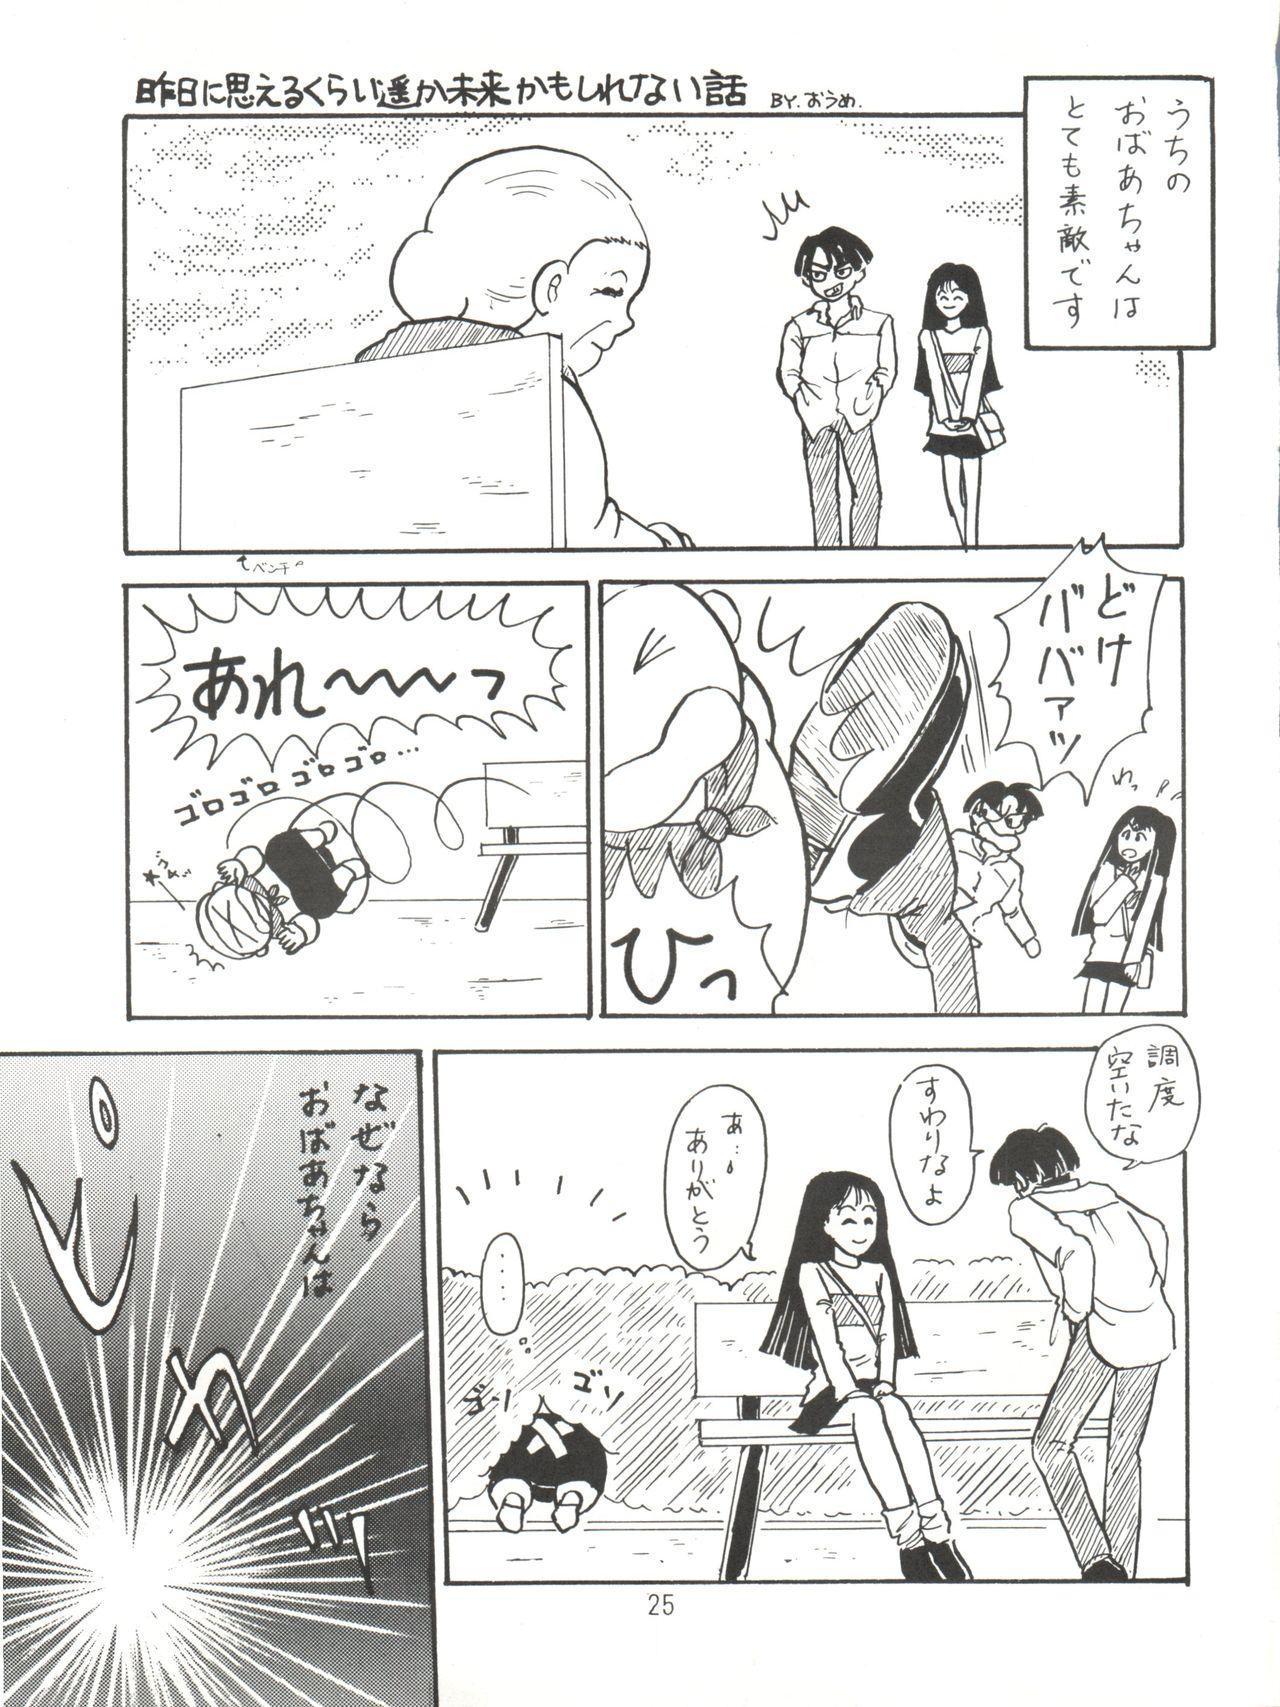 [紫電会 (お梅) MOMO POWER (Mahou no Princess Minky Momo) 24